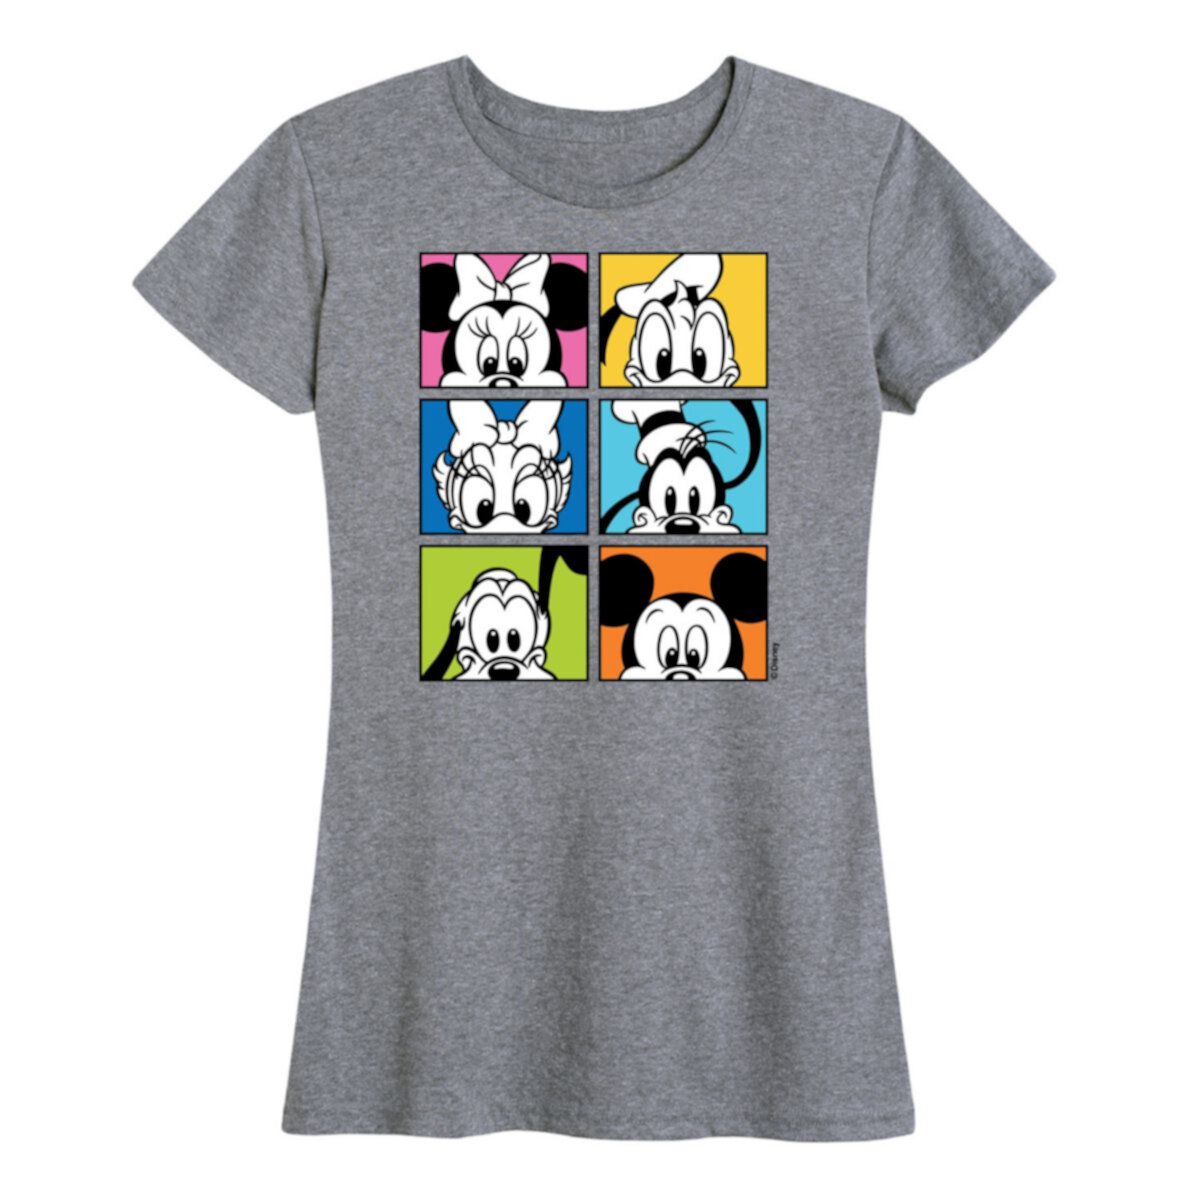 Женская футболка с рисунком «Микки Маус и друзья» Disney's Disney